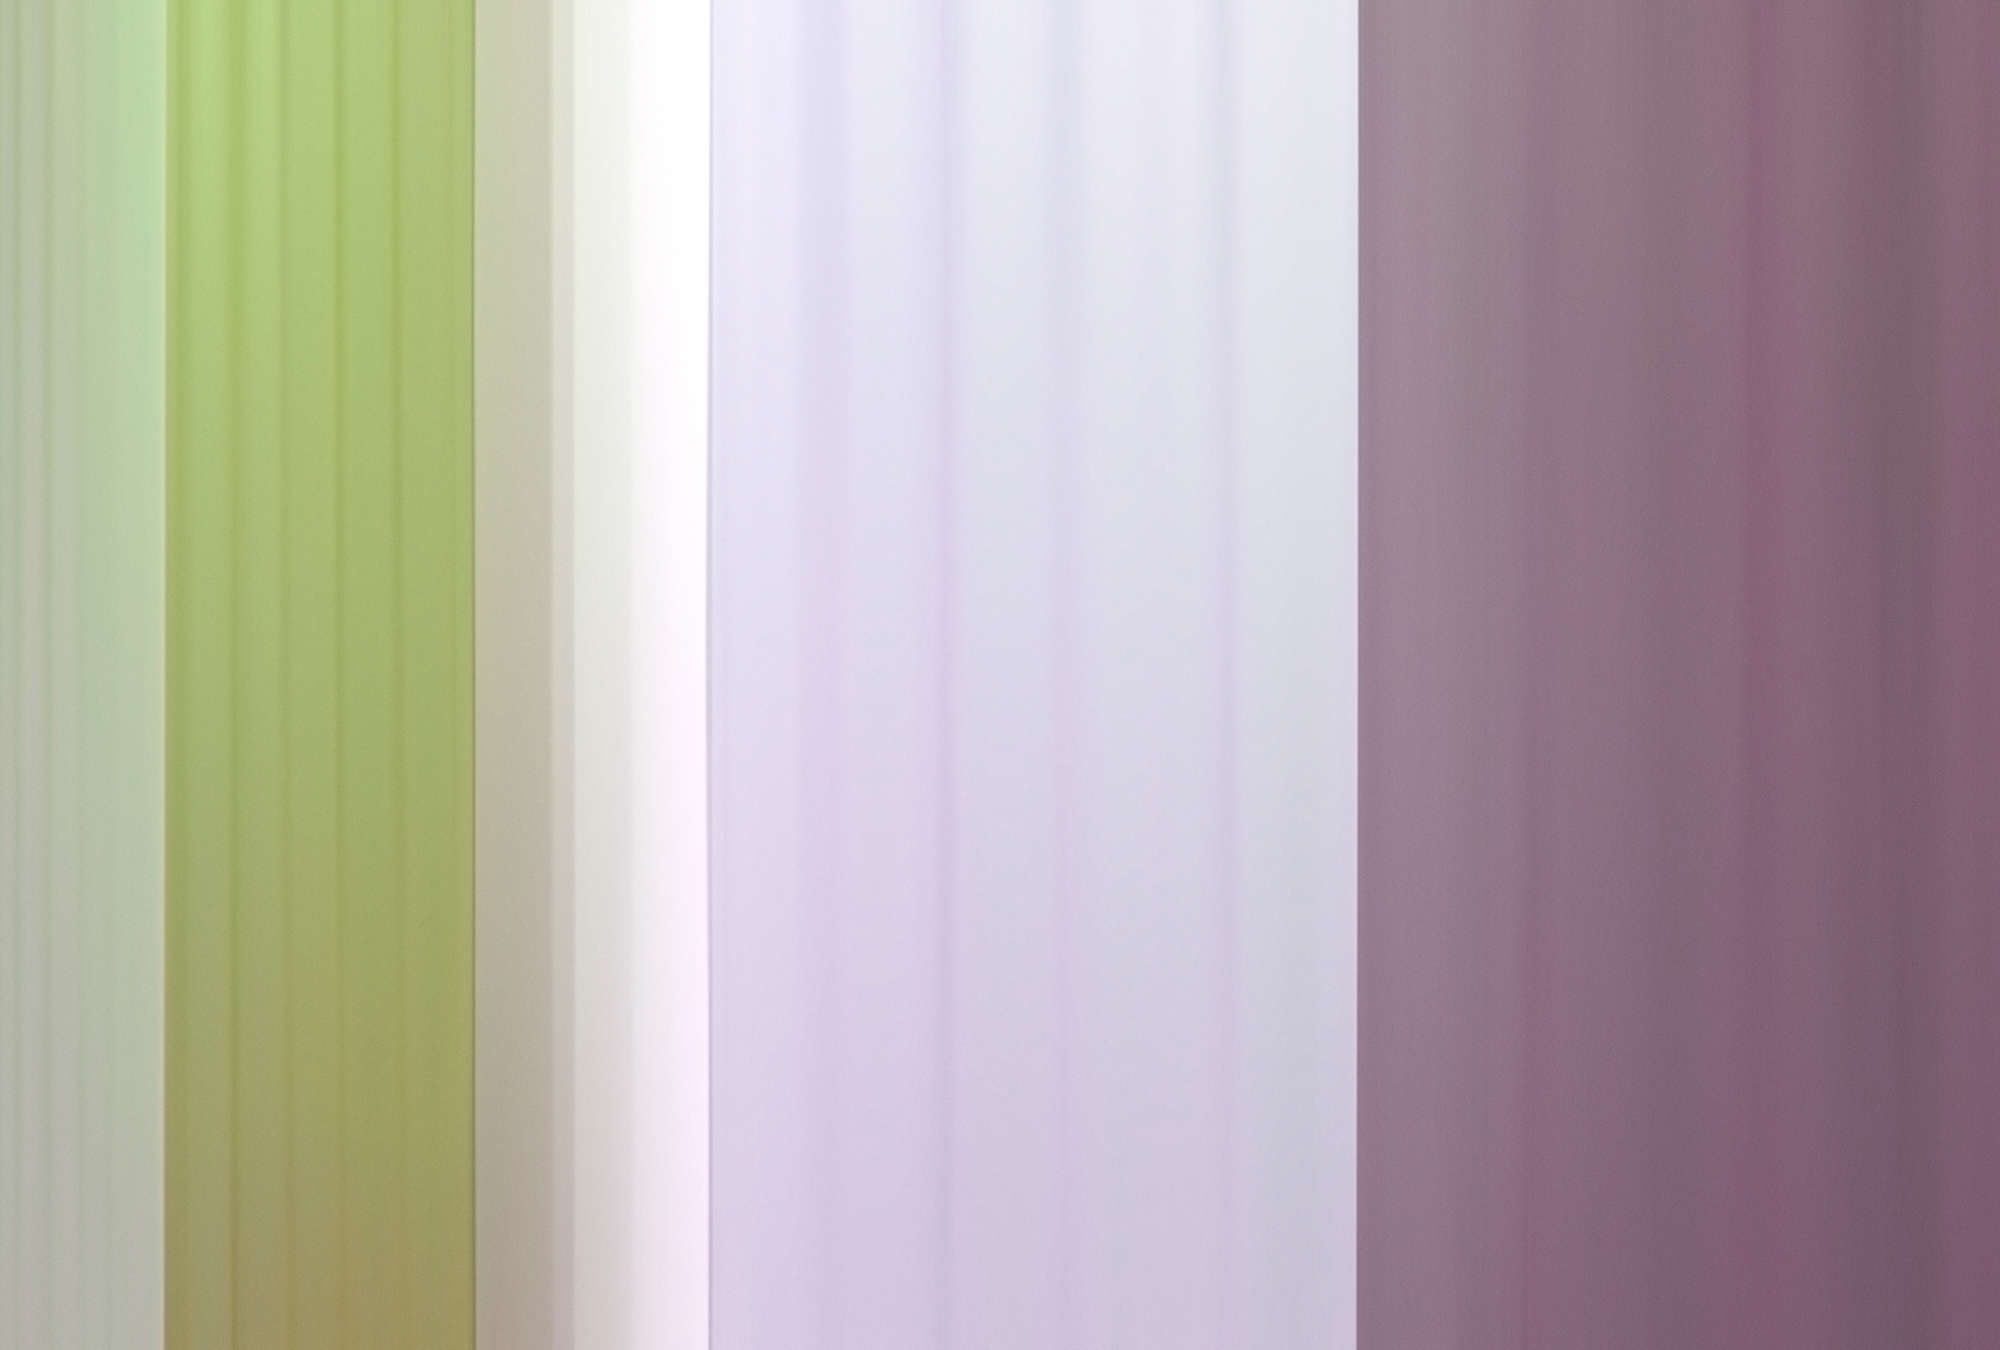             Digital behang »co-colores 3« - Kleurverloop met strepen - groen, lila, paars | Licht structuurvlies
        